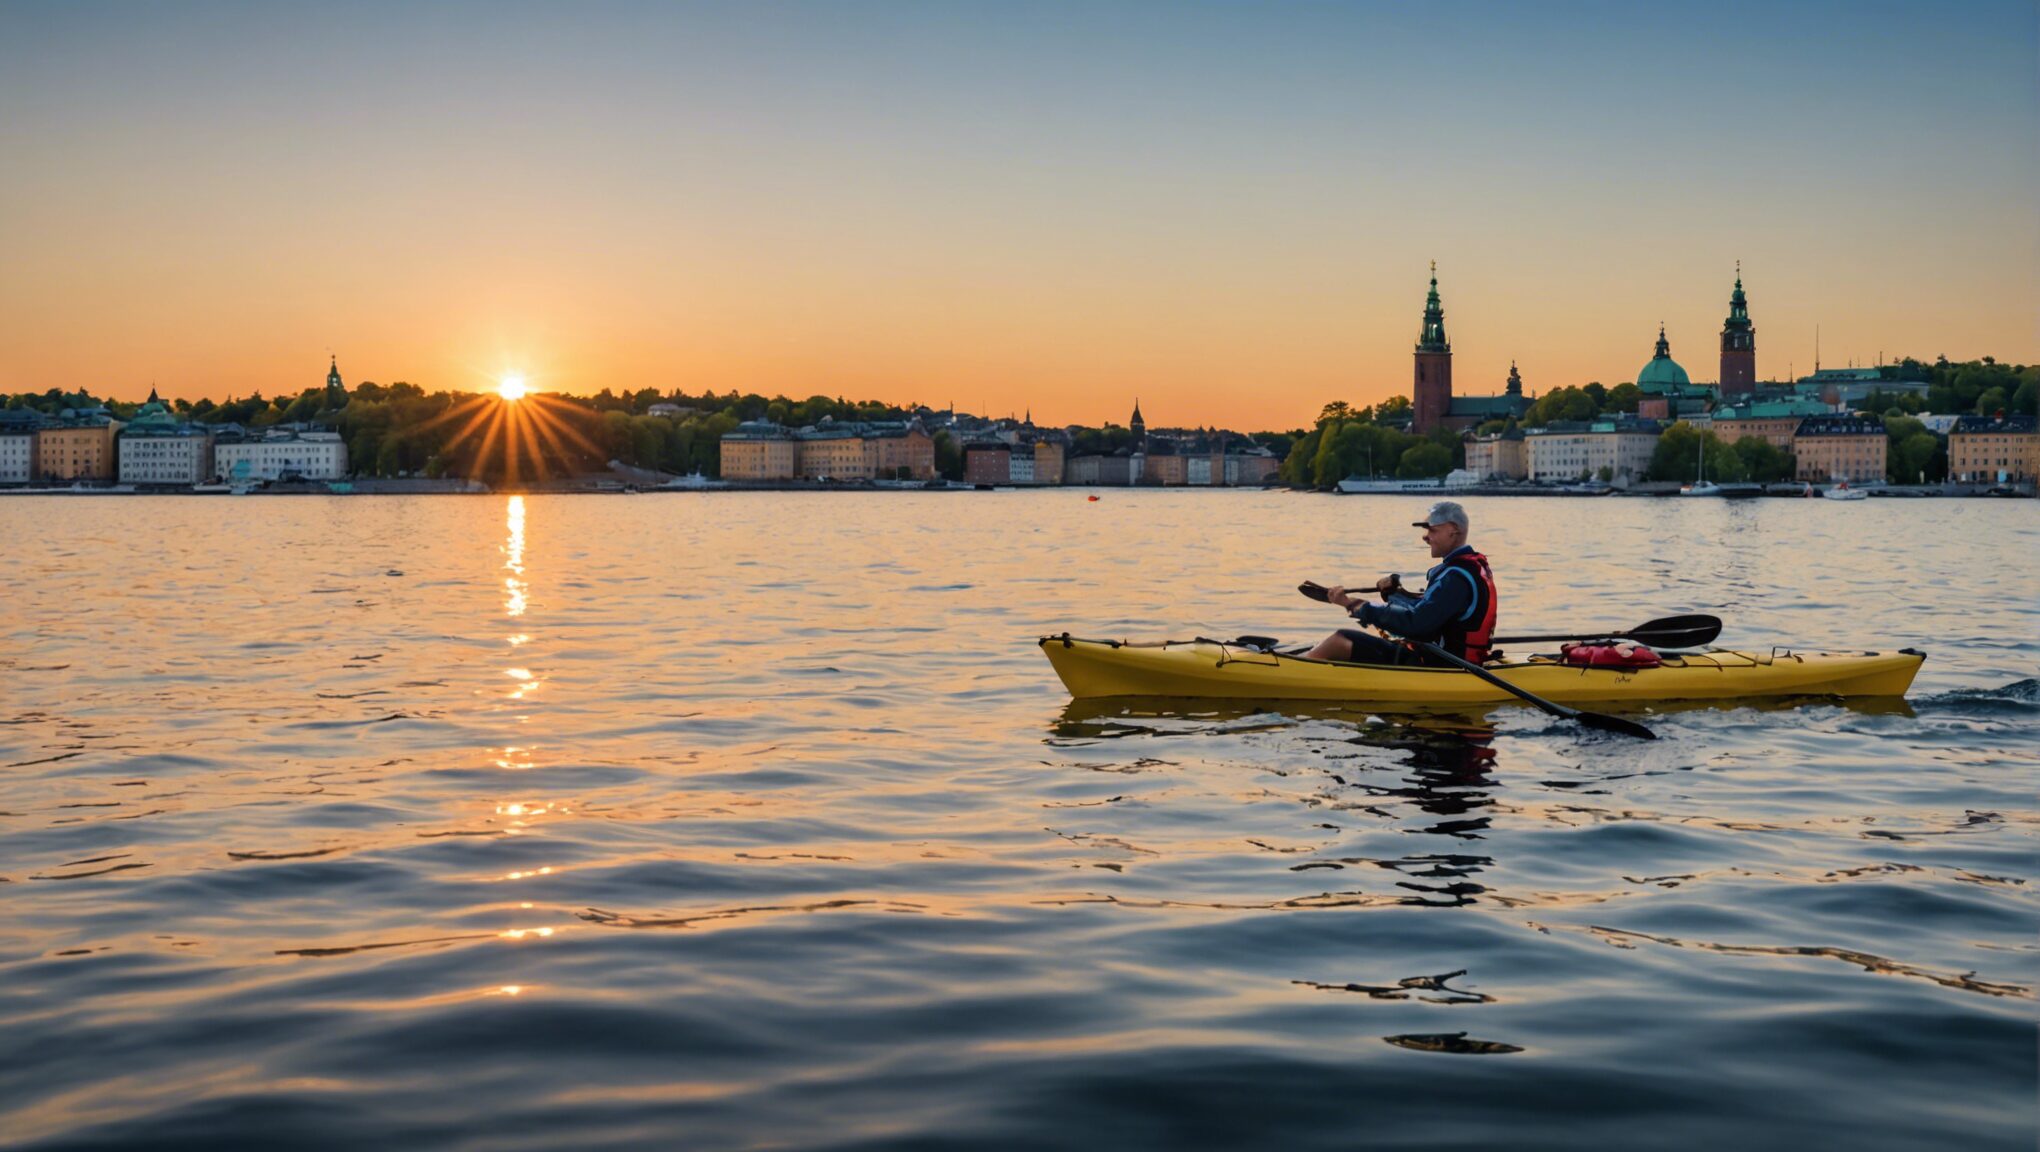 découvrez une aventure inoubliable en kayak à travers les magnifiques archipels de stockholm. réservez dès maintenant pour une expérience unique !